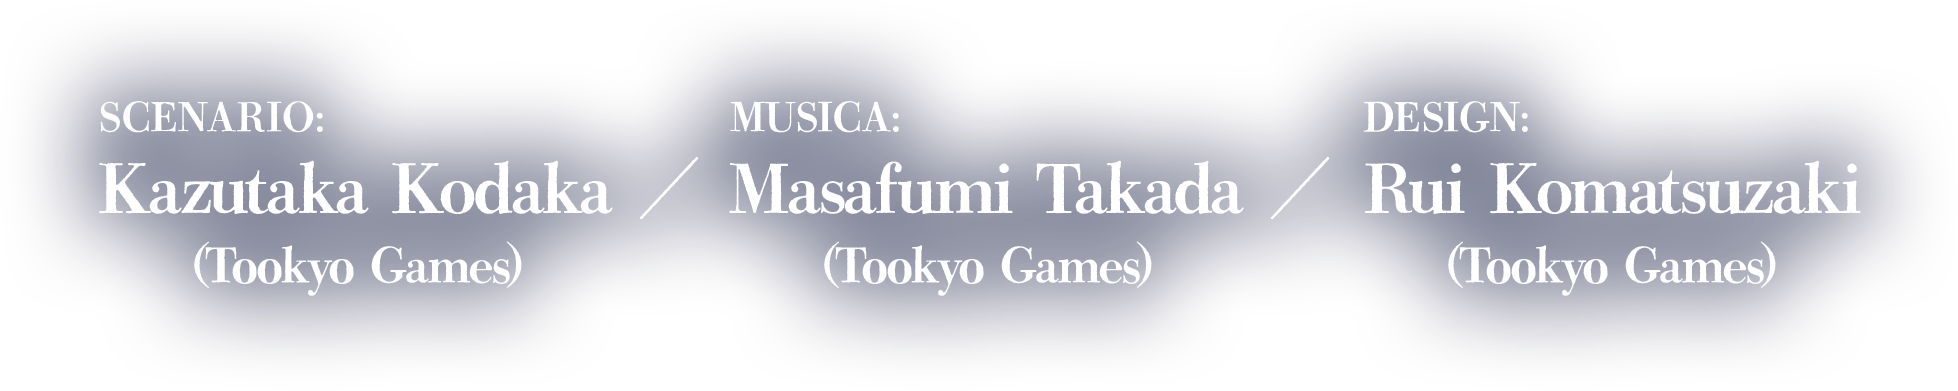 Scenario:Kazutaka Kodaka (Tookyo Games)Musica:Masafumi Takada (Tookyo Games)Design:Rui Komatsuzaki (Tookyo Games)